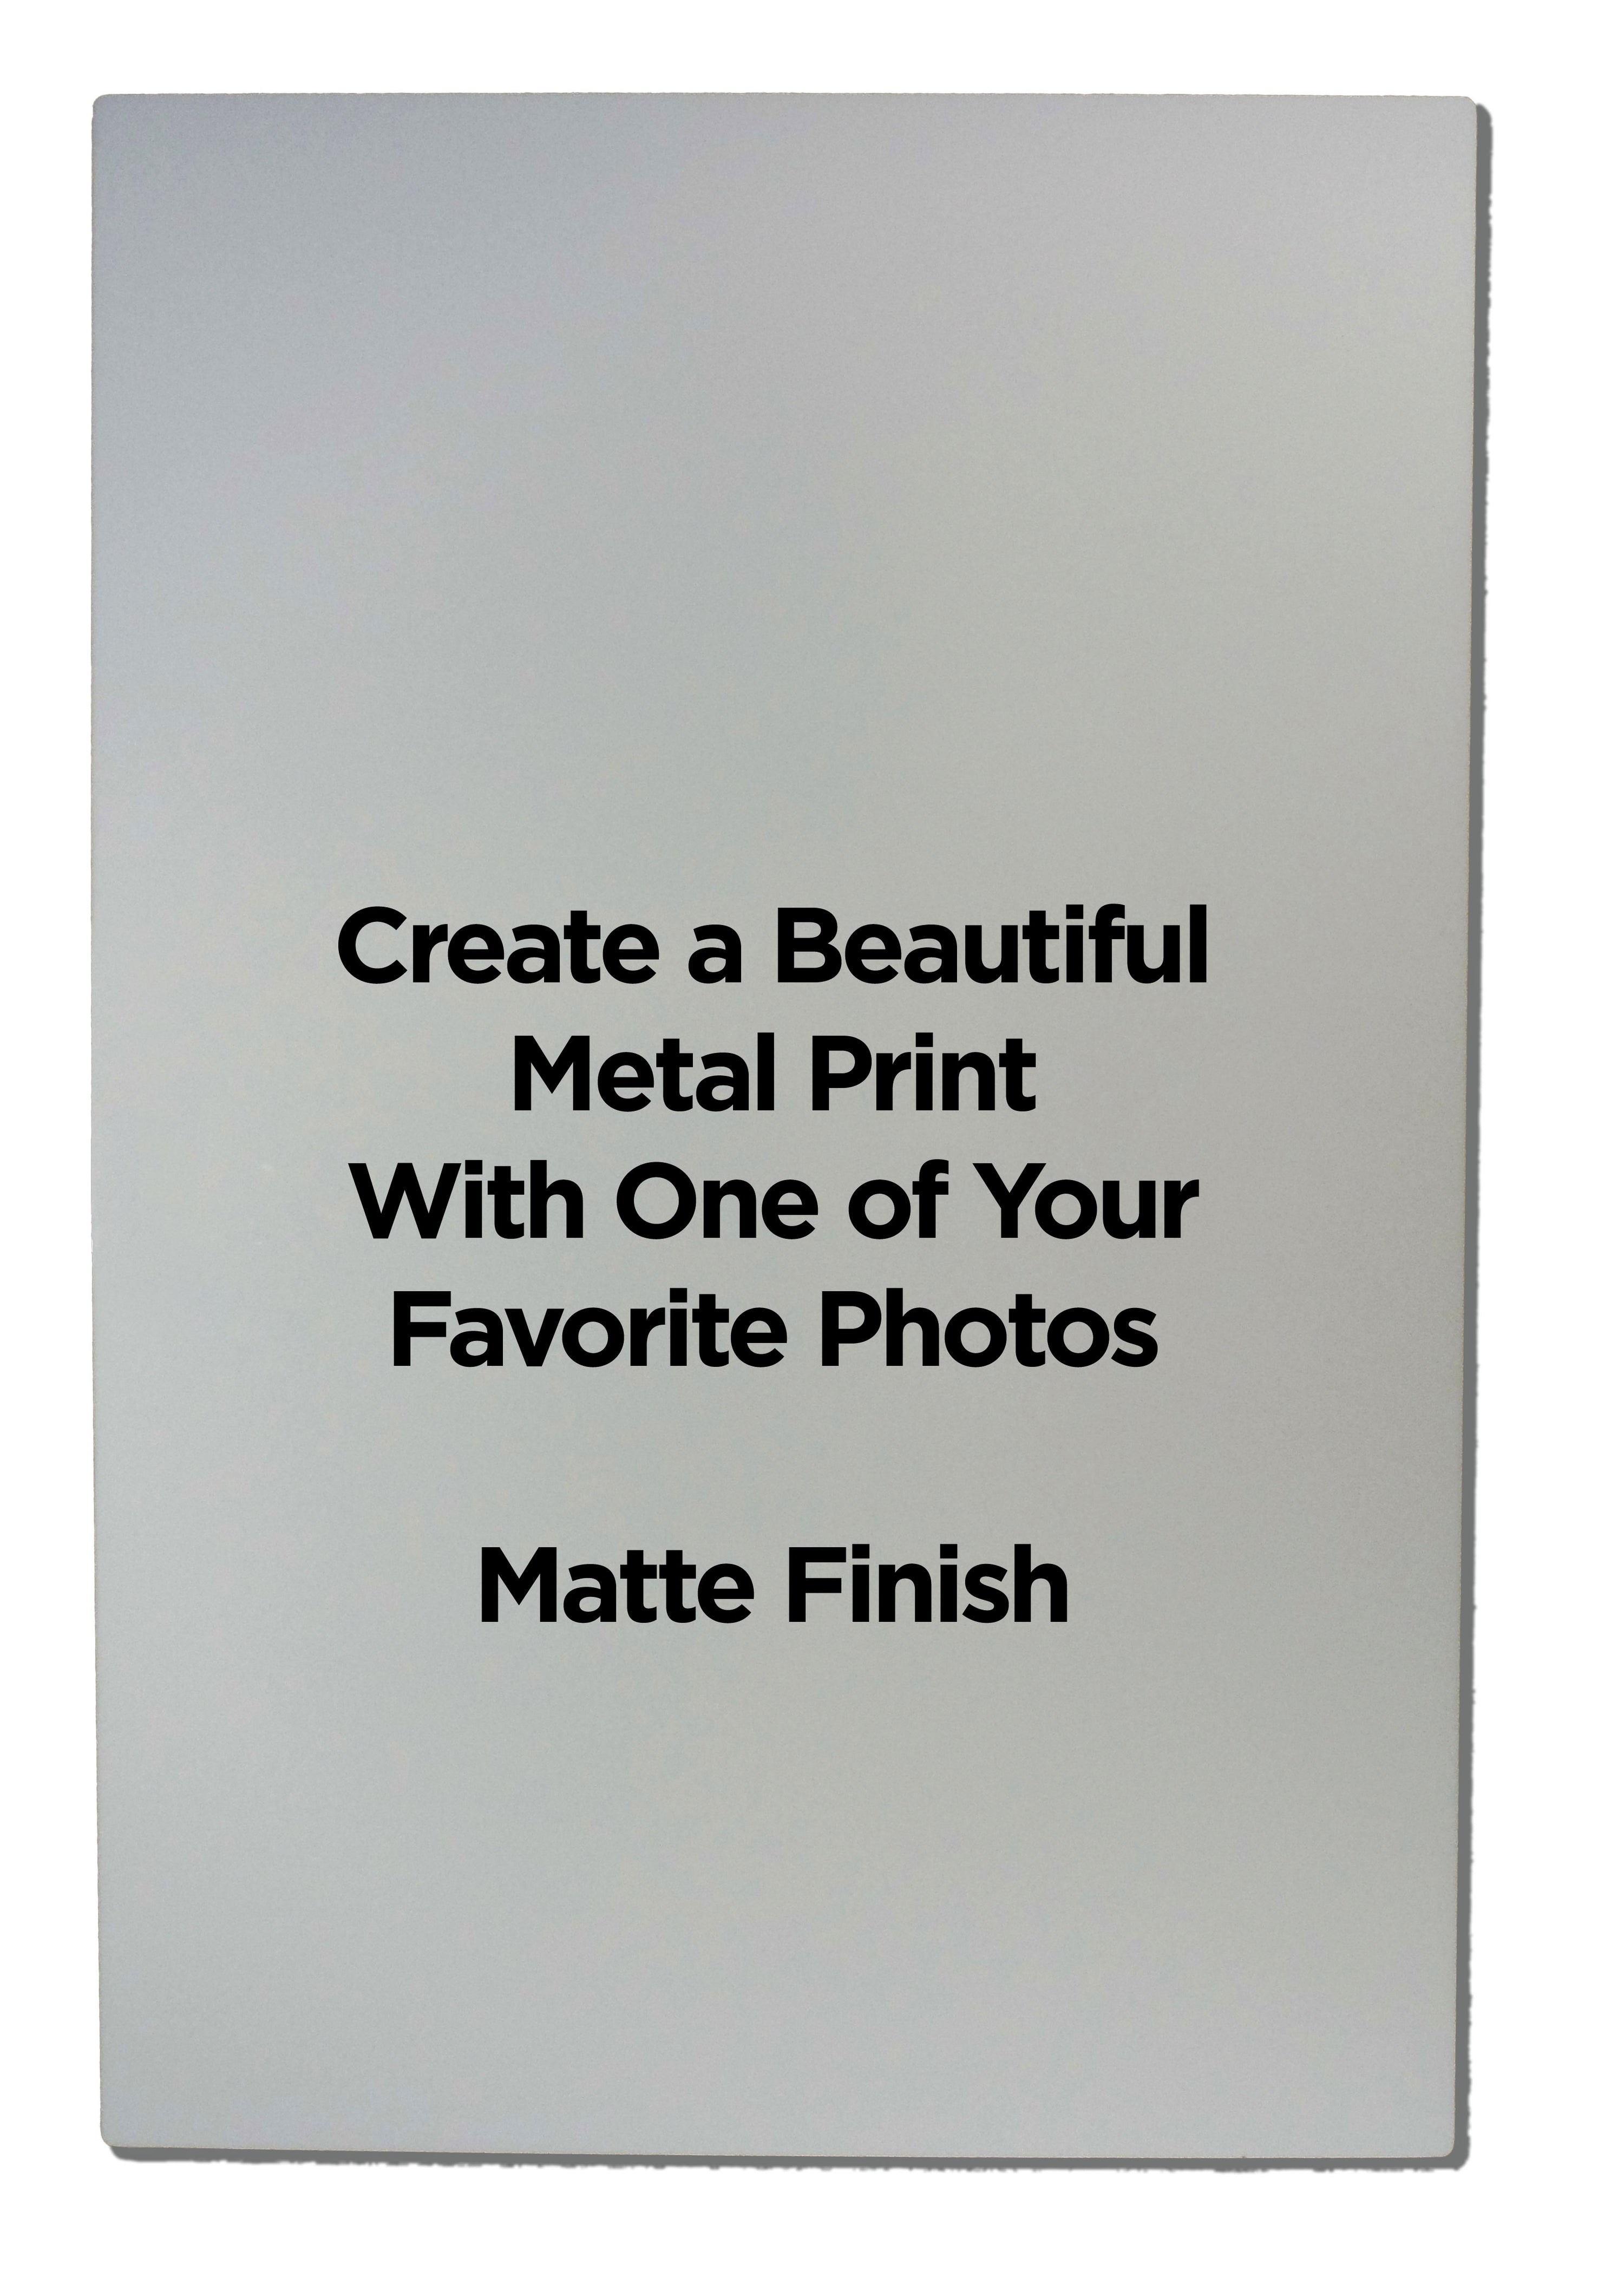 Rectangular Metal Photo Panels Matte Finish